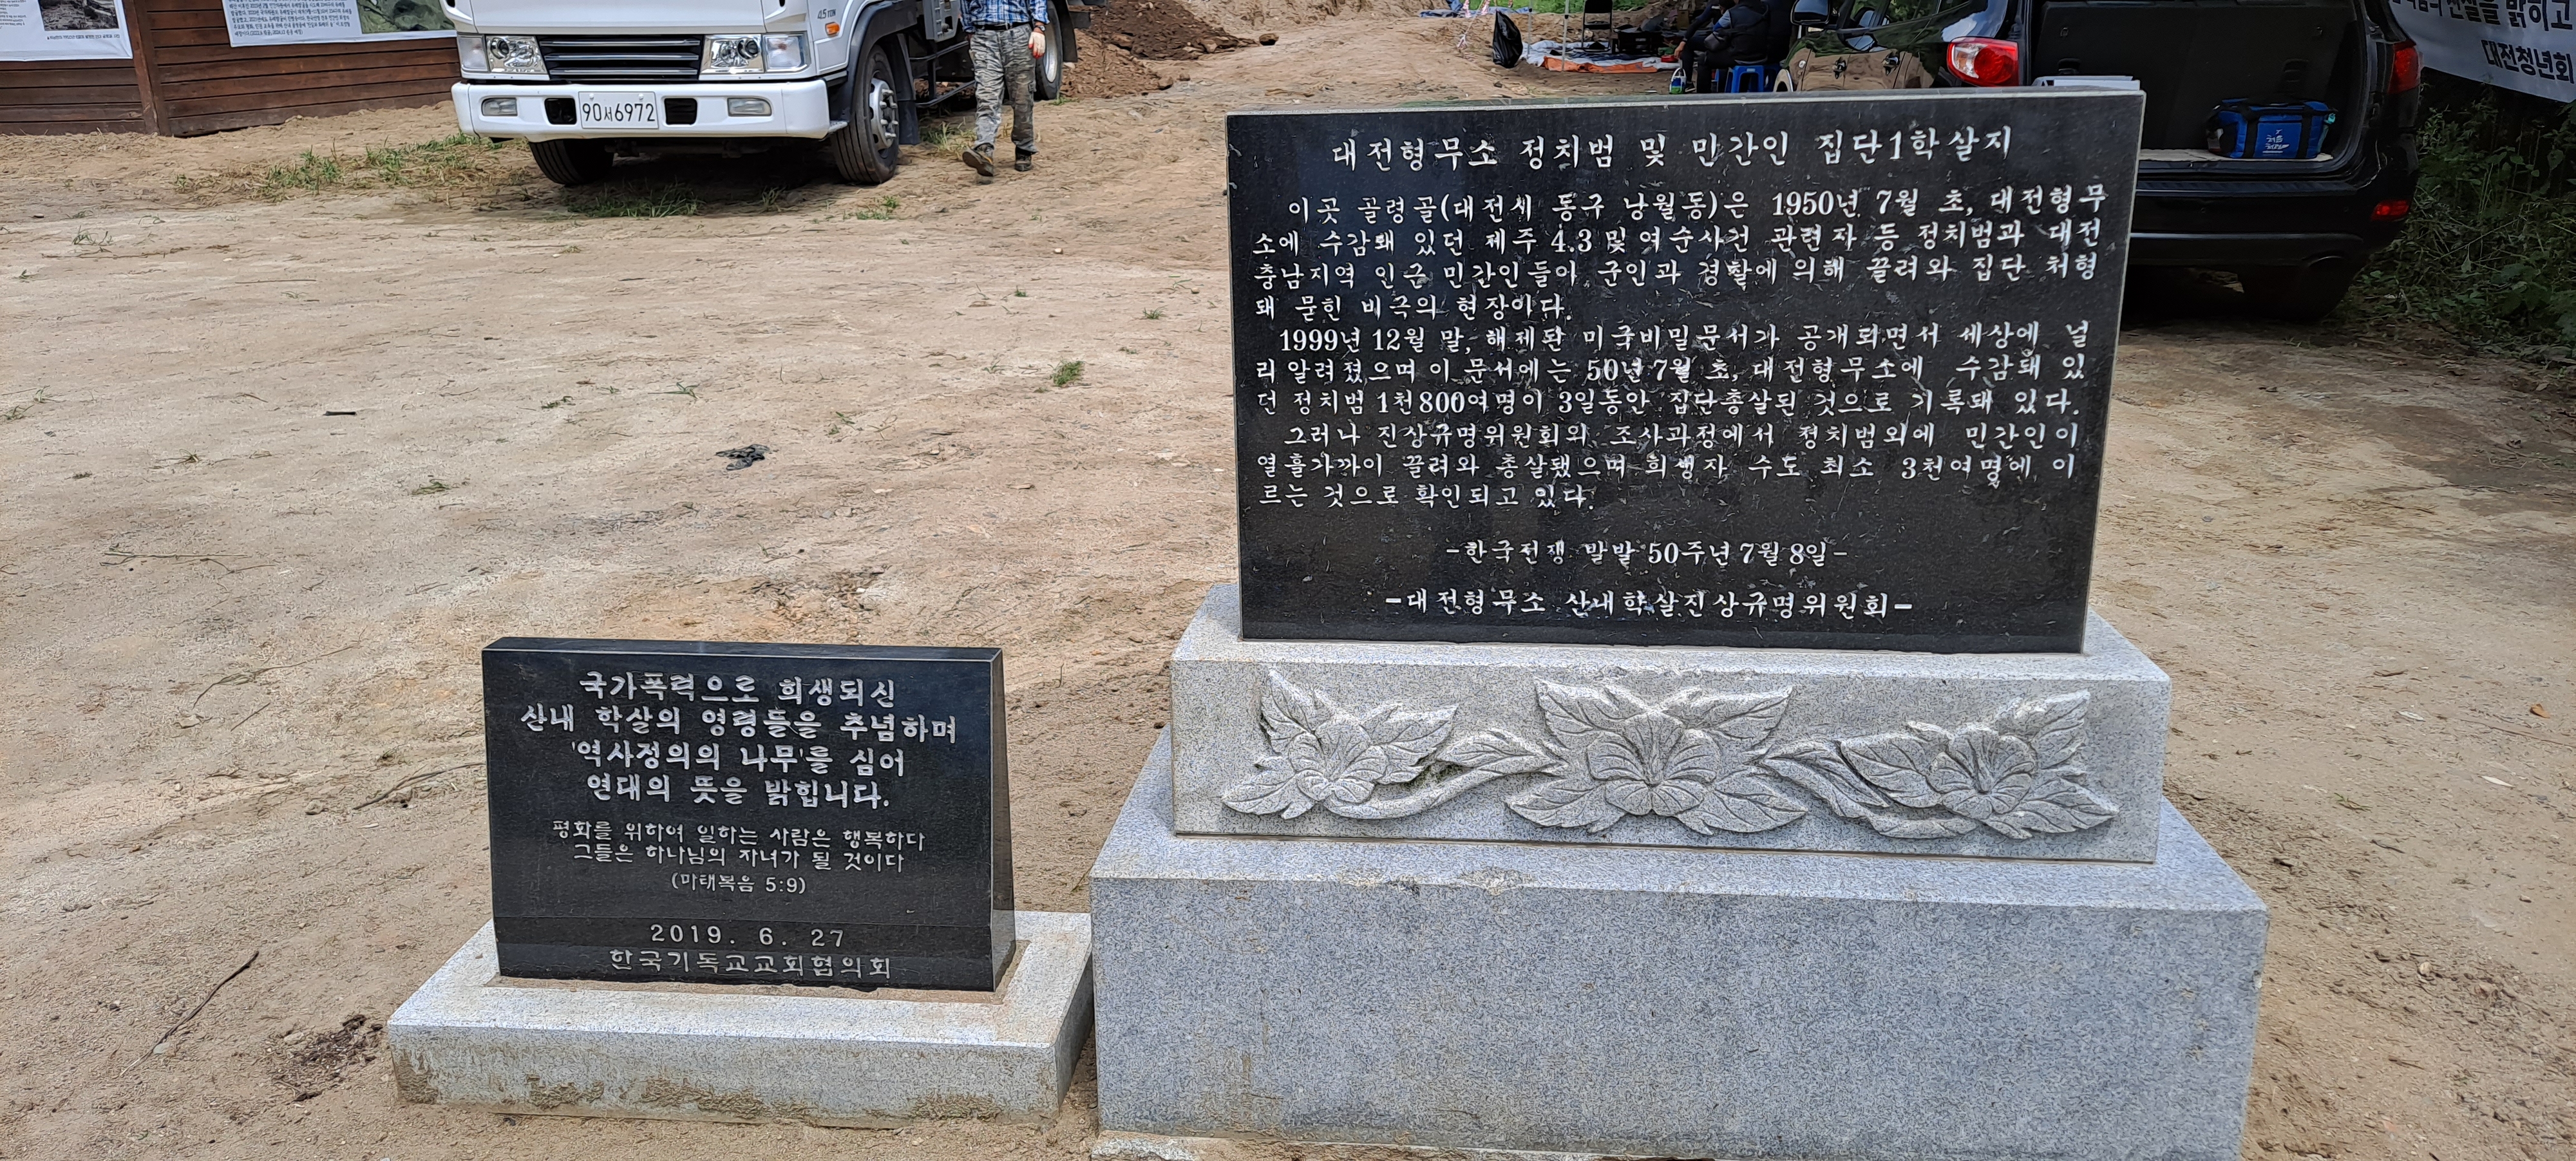 대전 골령골 대전 형무소 정치범 및 민간집단1학살지의 표지석. 제주도 제공